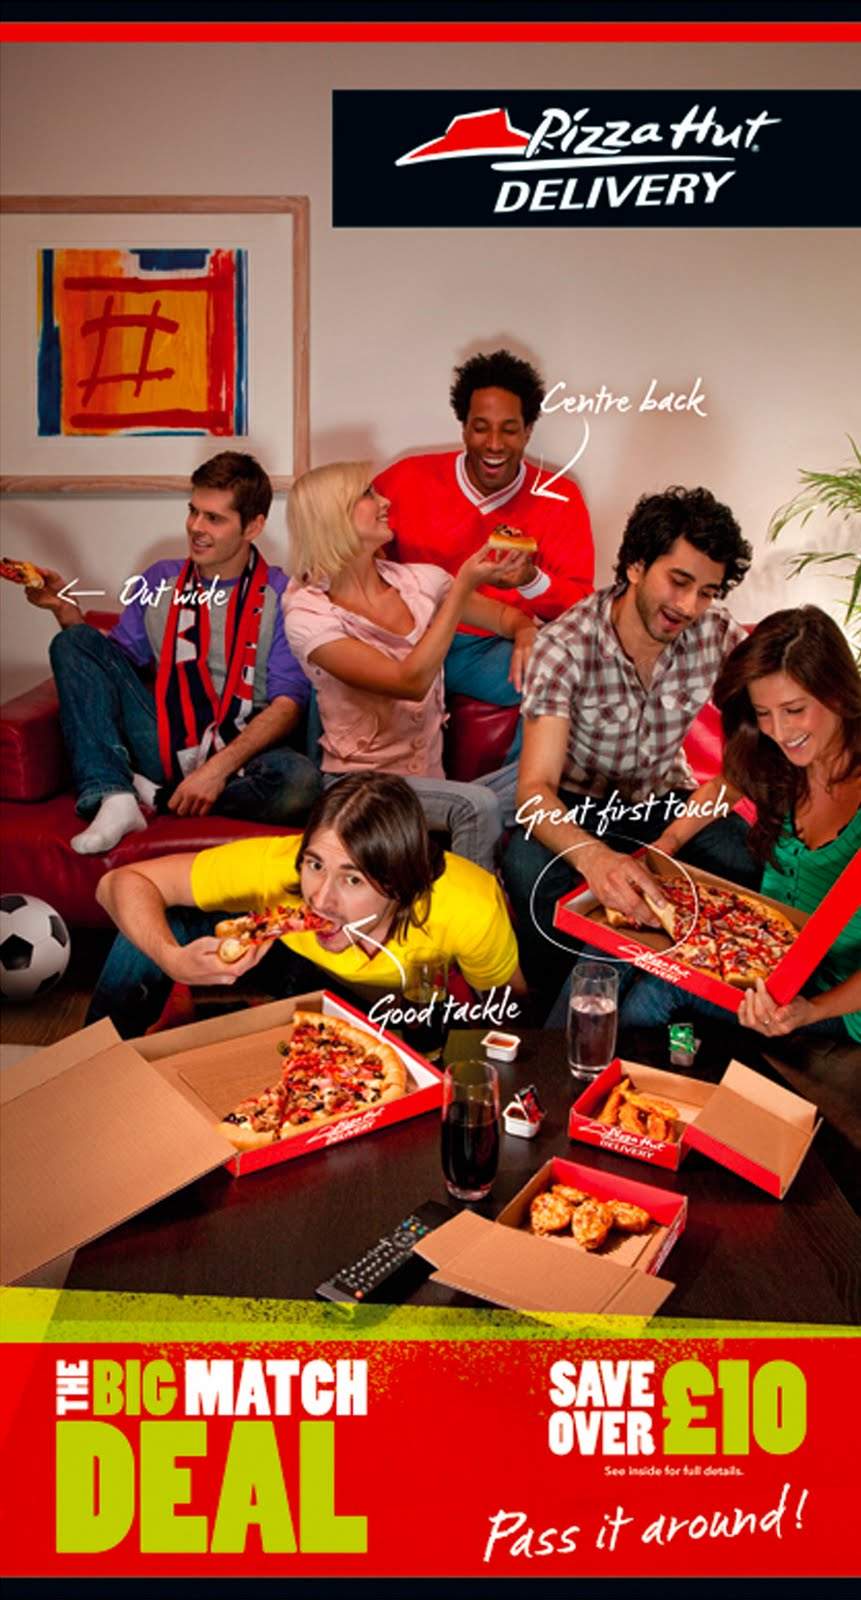 Chiến lược Marketing của Pizza Hut khuyến mãi đánh vào nhu cầu khách hàng